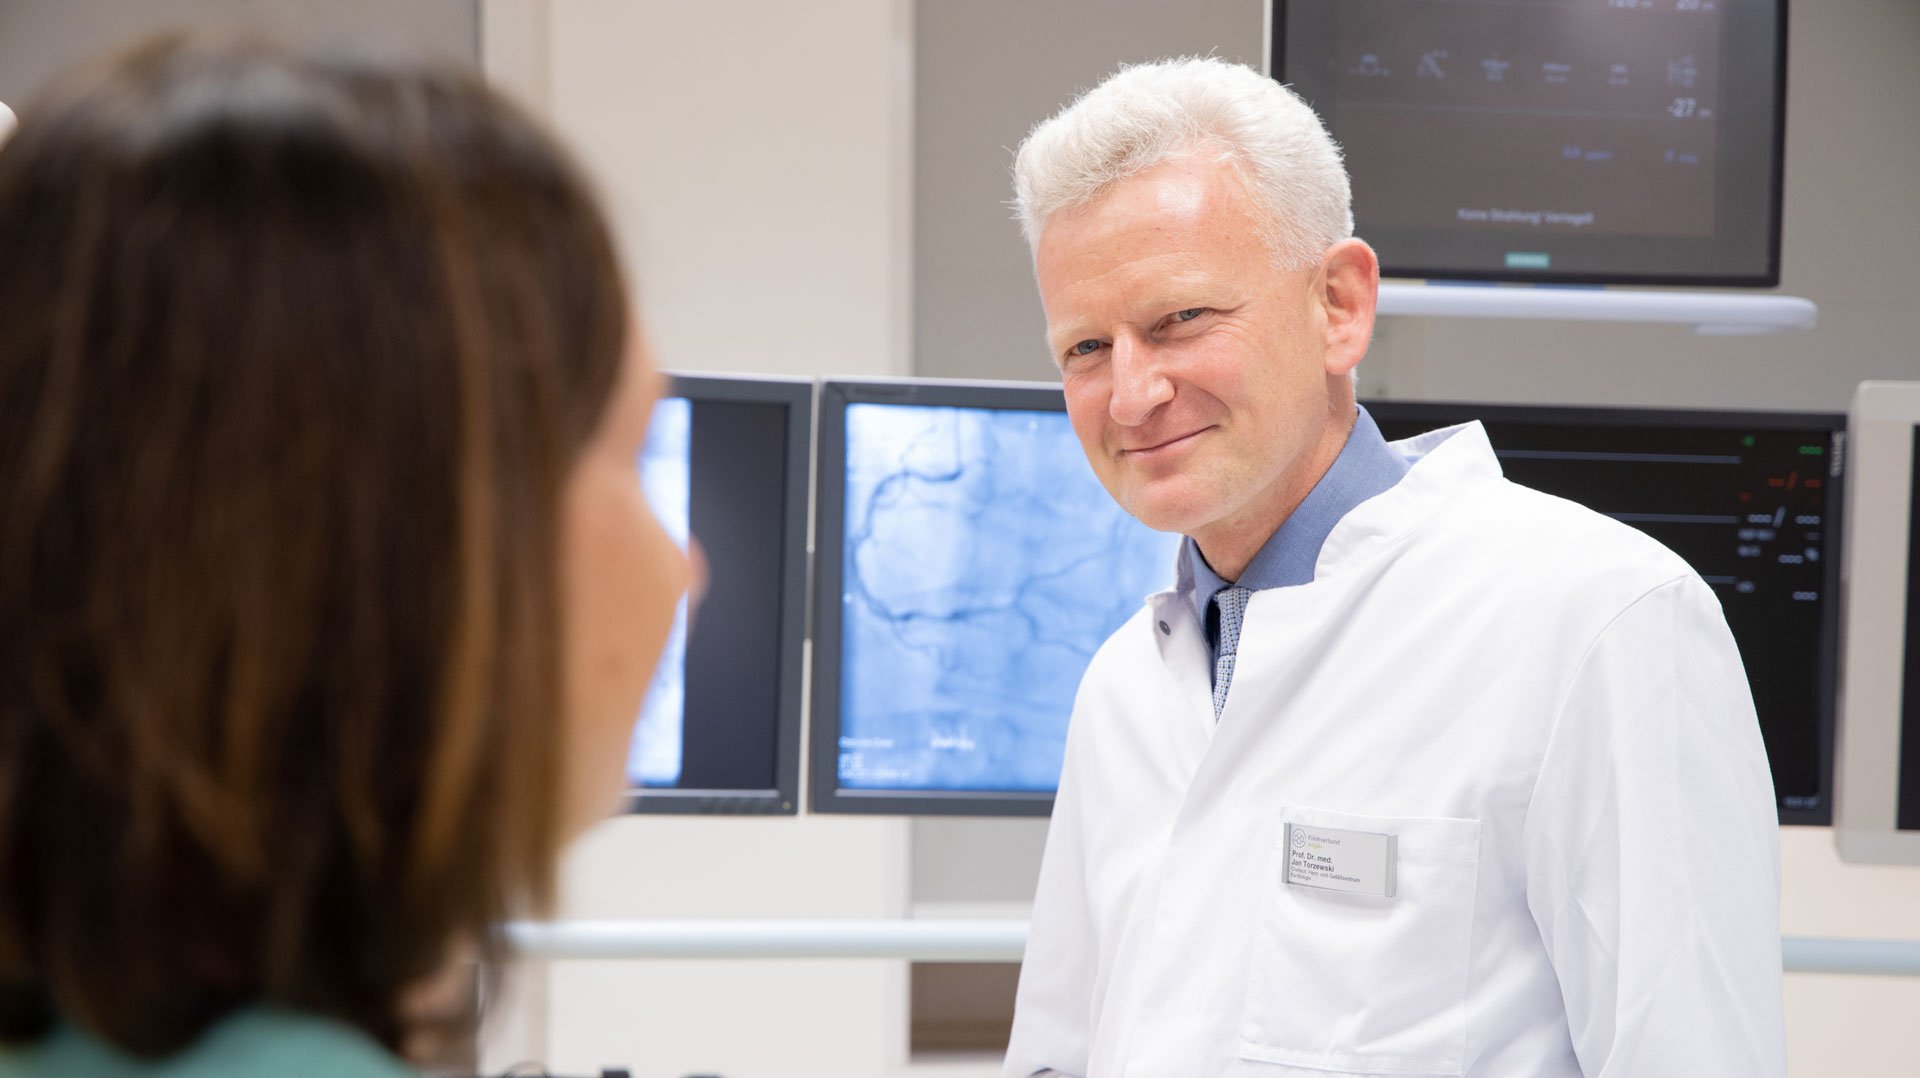 Dr. Jan Torzewski im GEspräch mit einer OP-Fachkraft im Operationssaal im Herz- & Gefäßzentrum am Standort Kempten